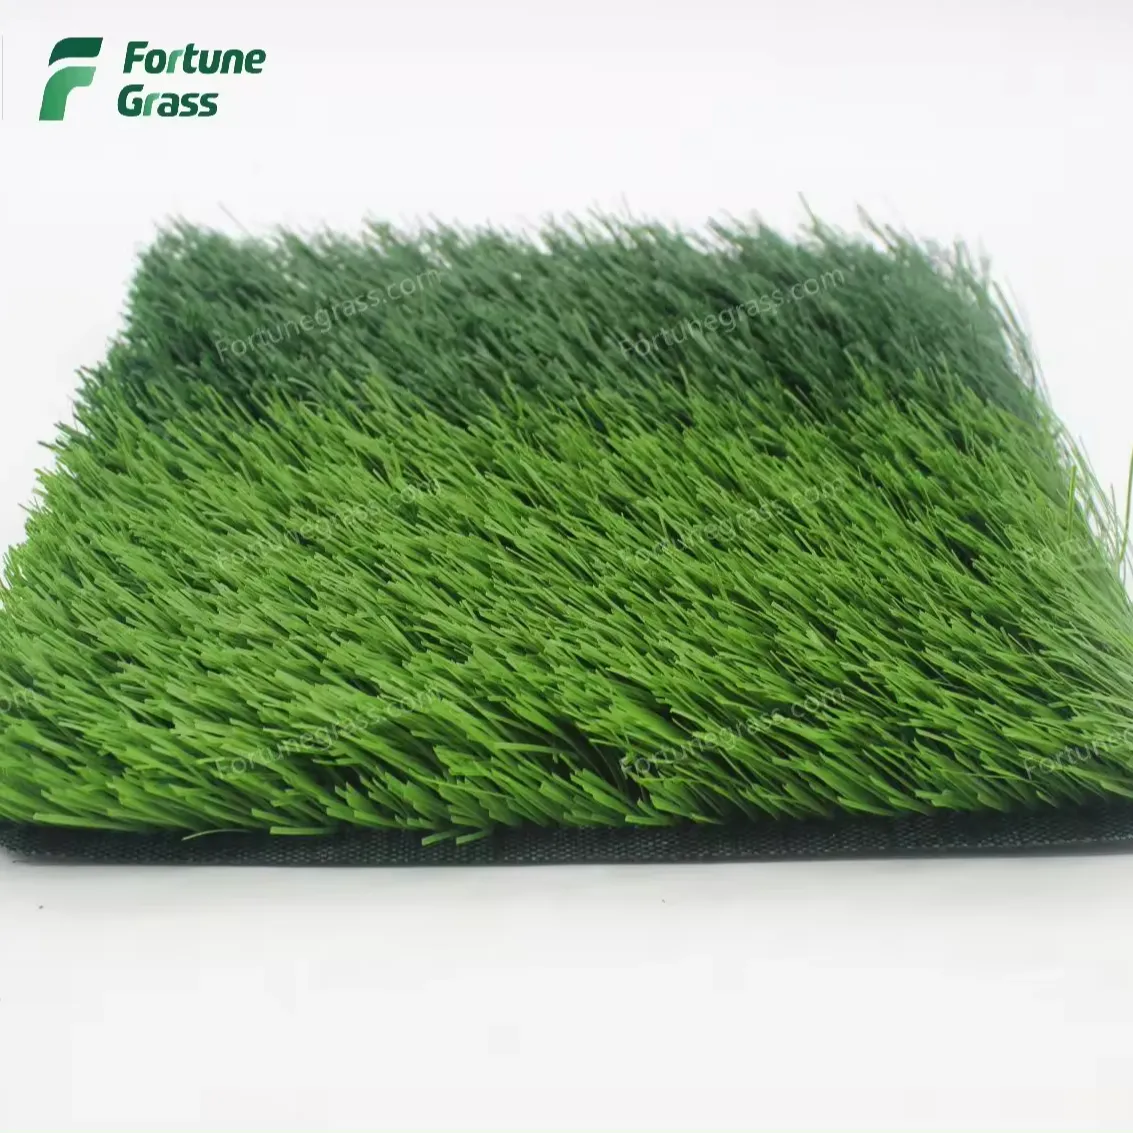 Европейское качество, высокопроизводительная пряжа Tencate, футбольное искусственное покрытие, высокая носимая 50 мм искусственная трава для футбольного поля